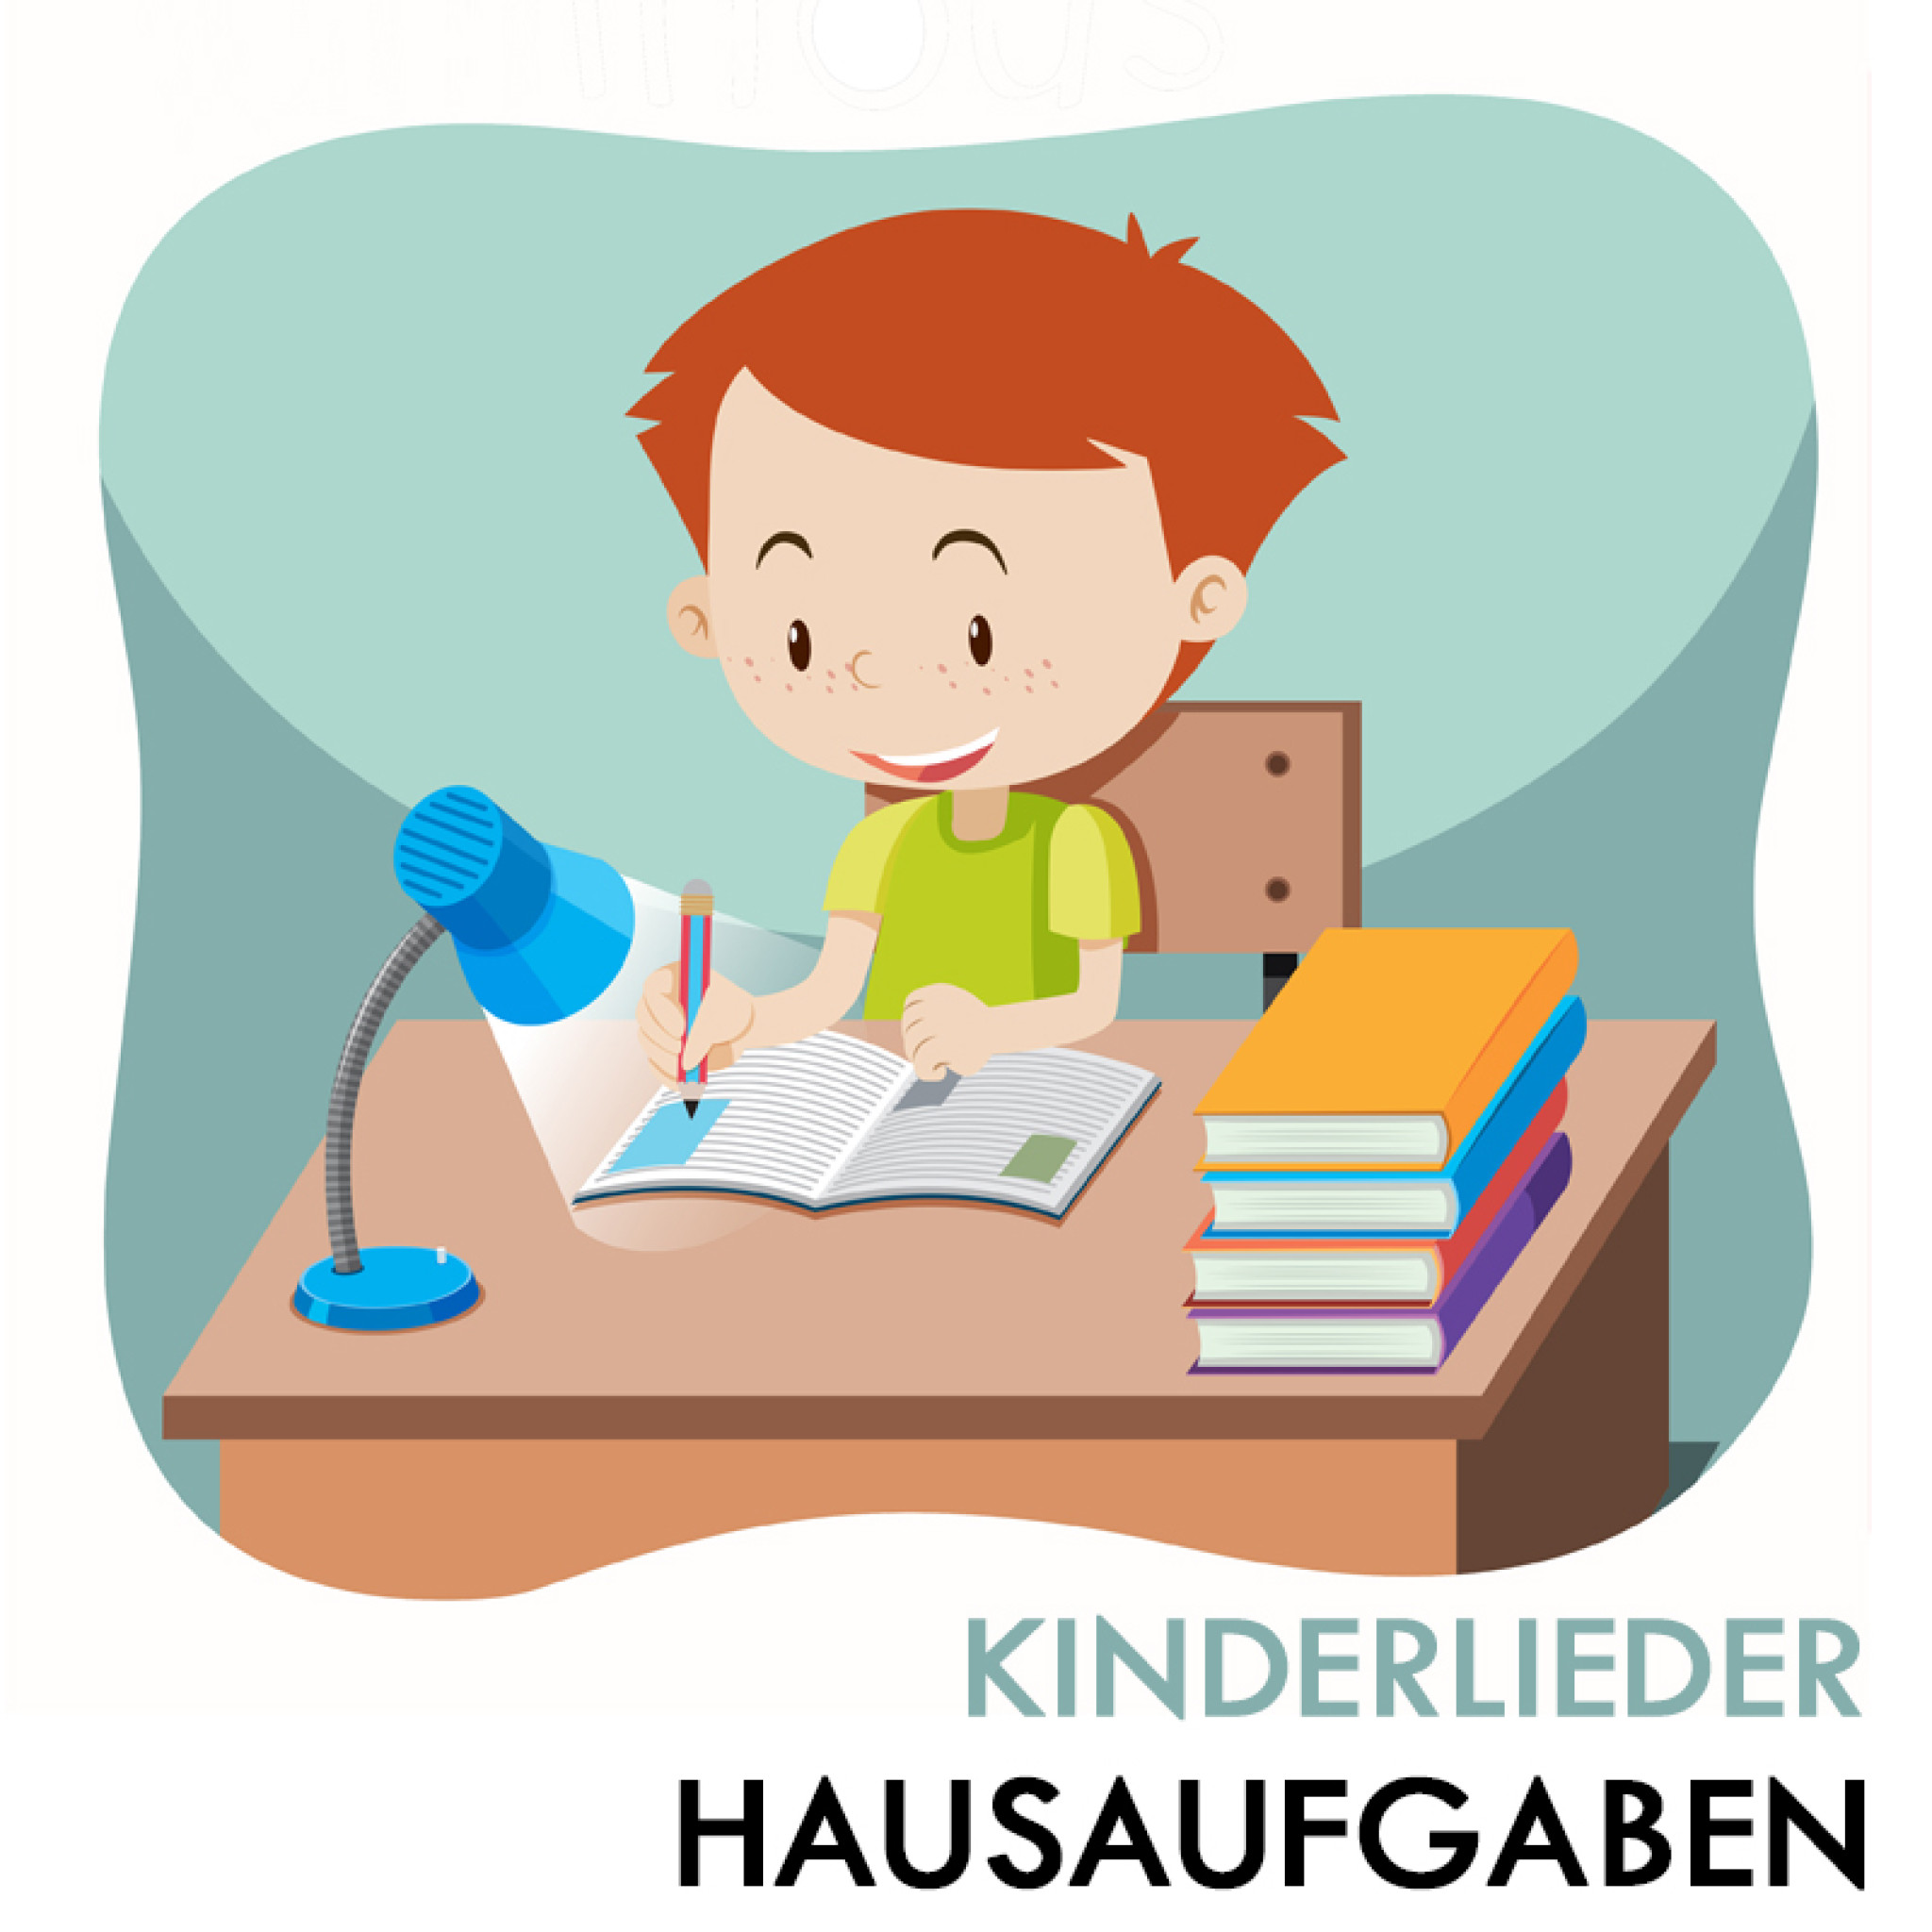 Hausaufgabenlieder für Kinder (Cover)